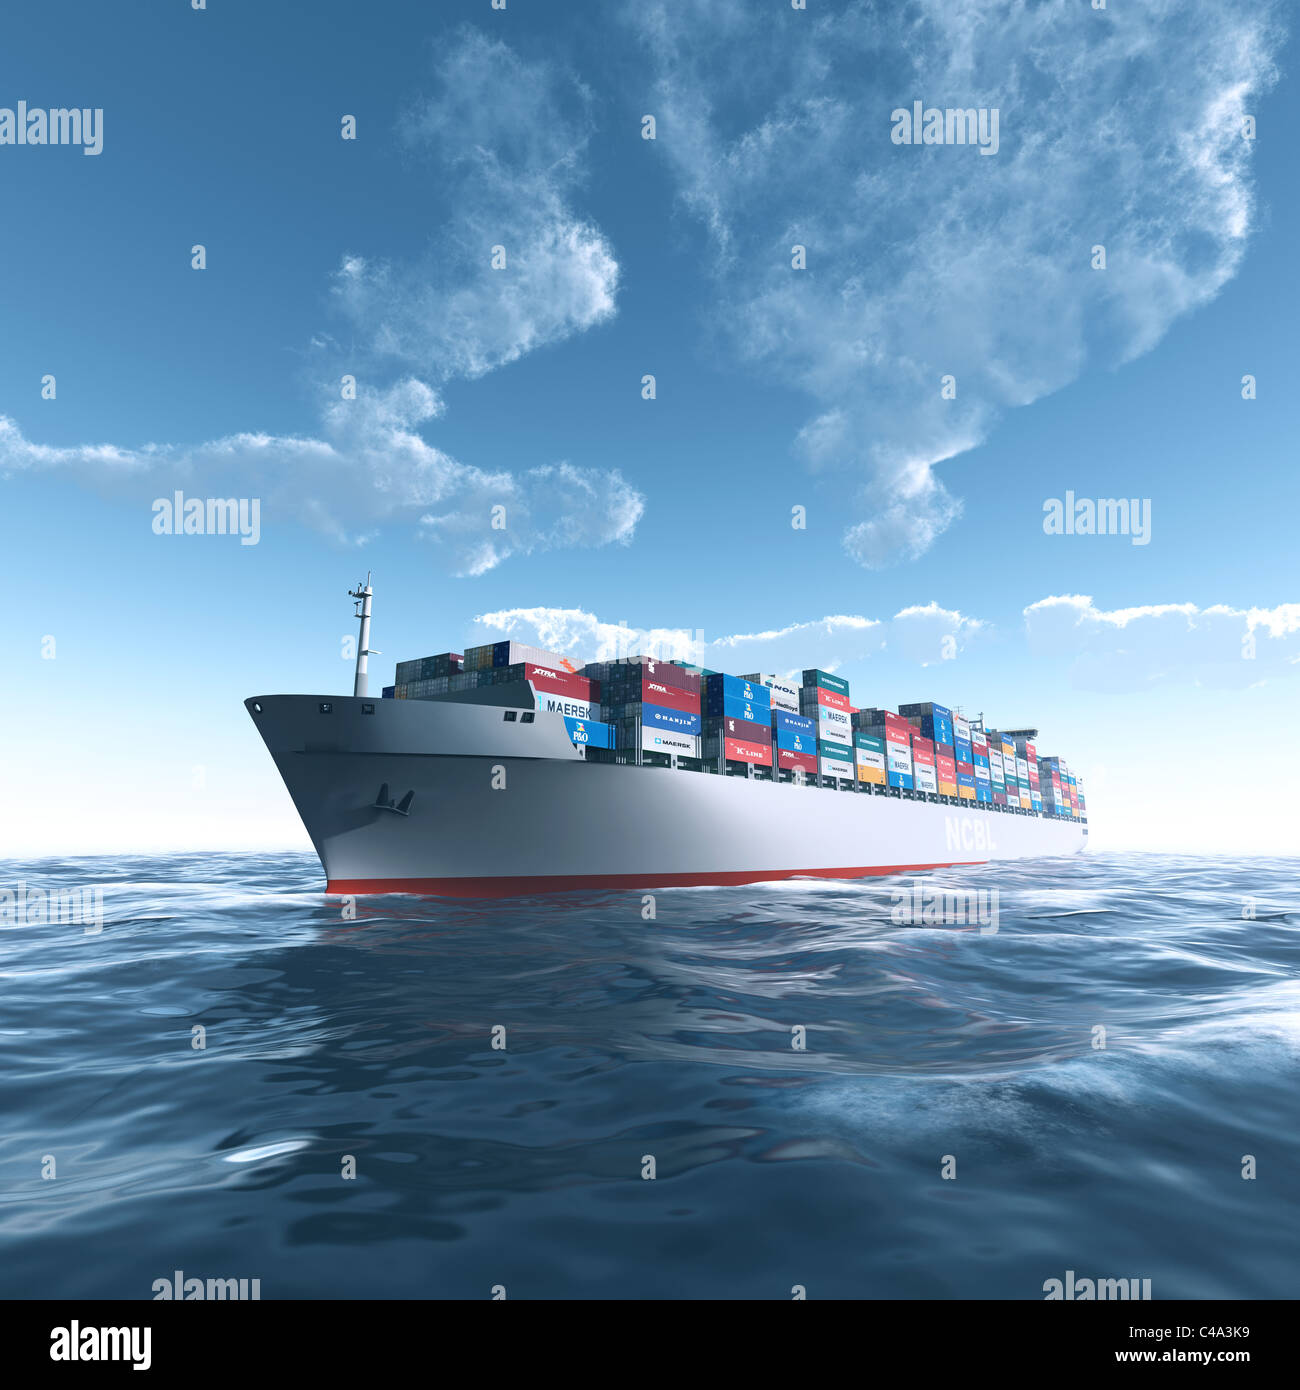 Envío internacional de contenedores de carga marítima en buenas condiciones climáticas Foto de stock